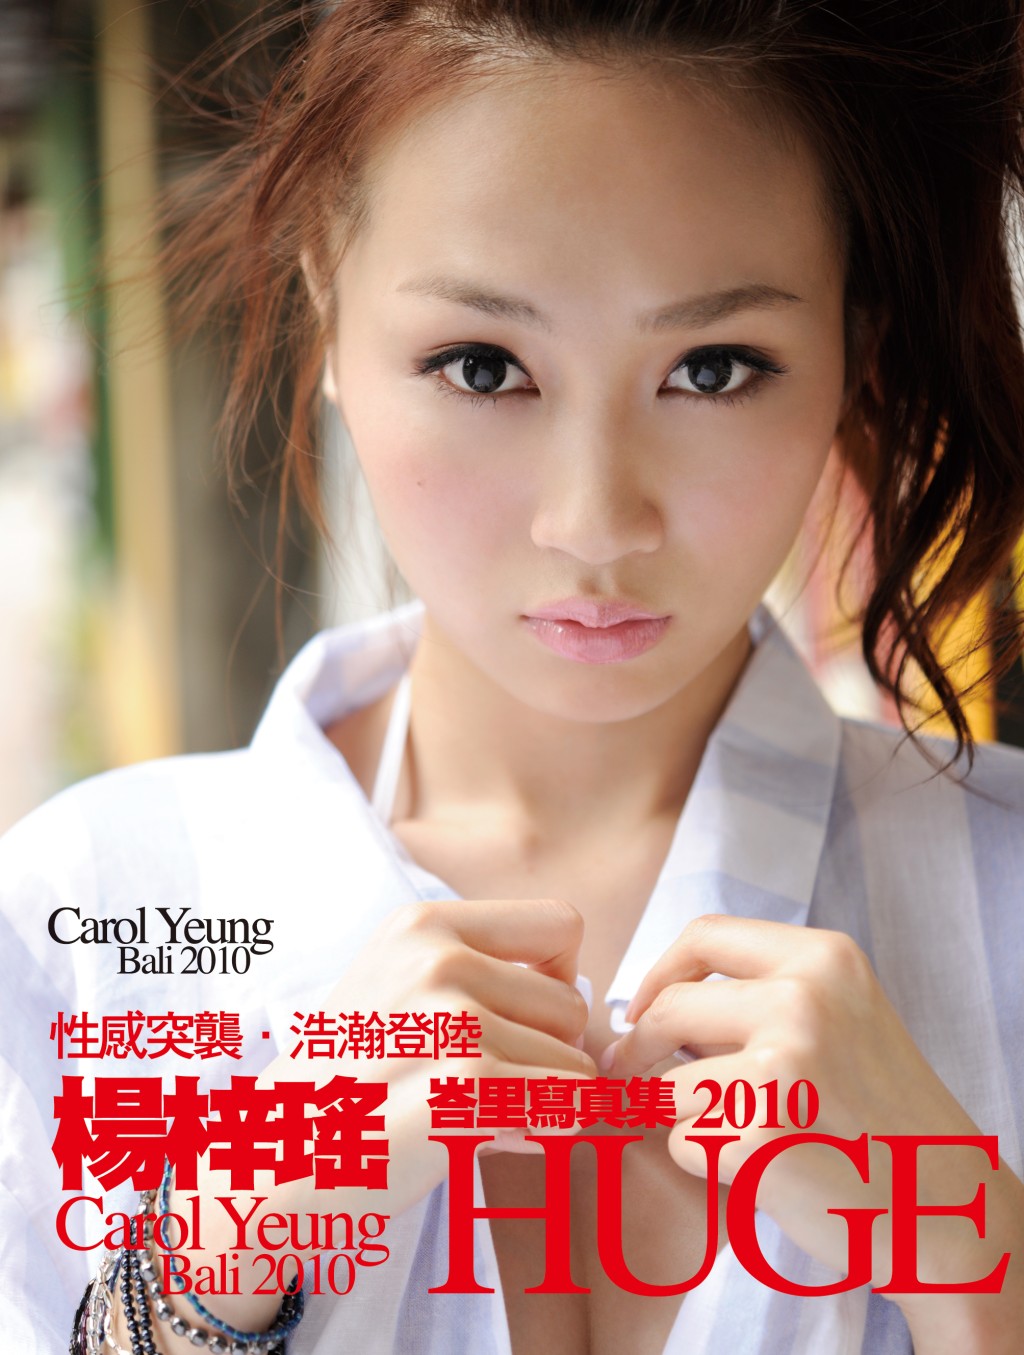 杨焉曾在2010年书展中推出唯一一本写真集《Huge》。